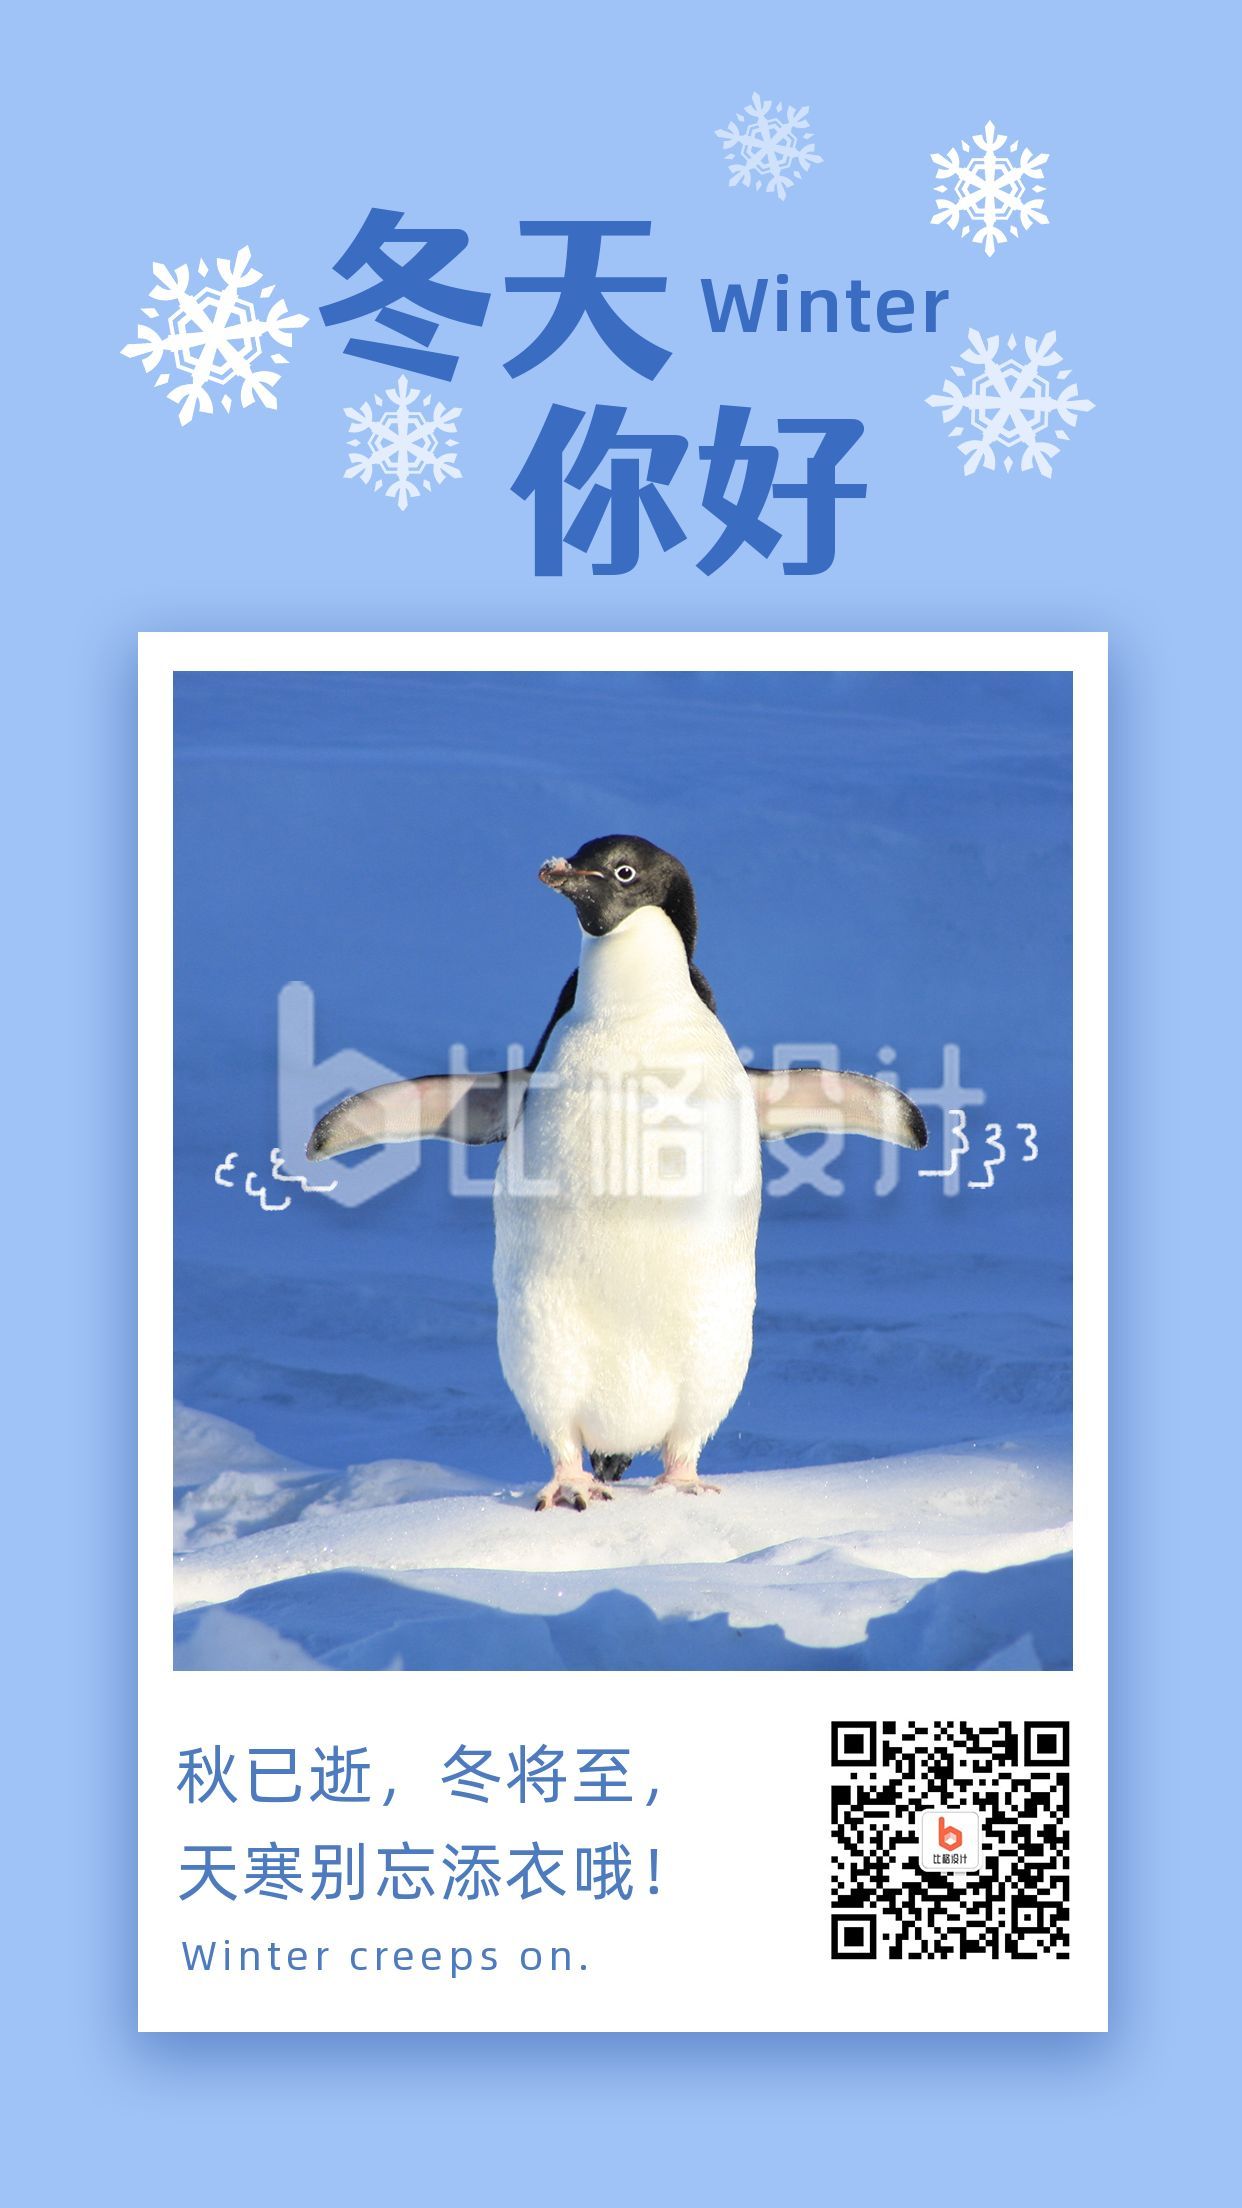 冬天你好问候语正能量可爱企鹅雪景实景照片手机海报